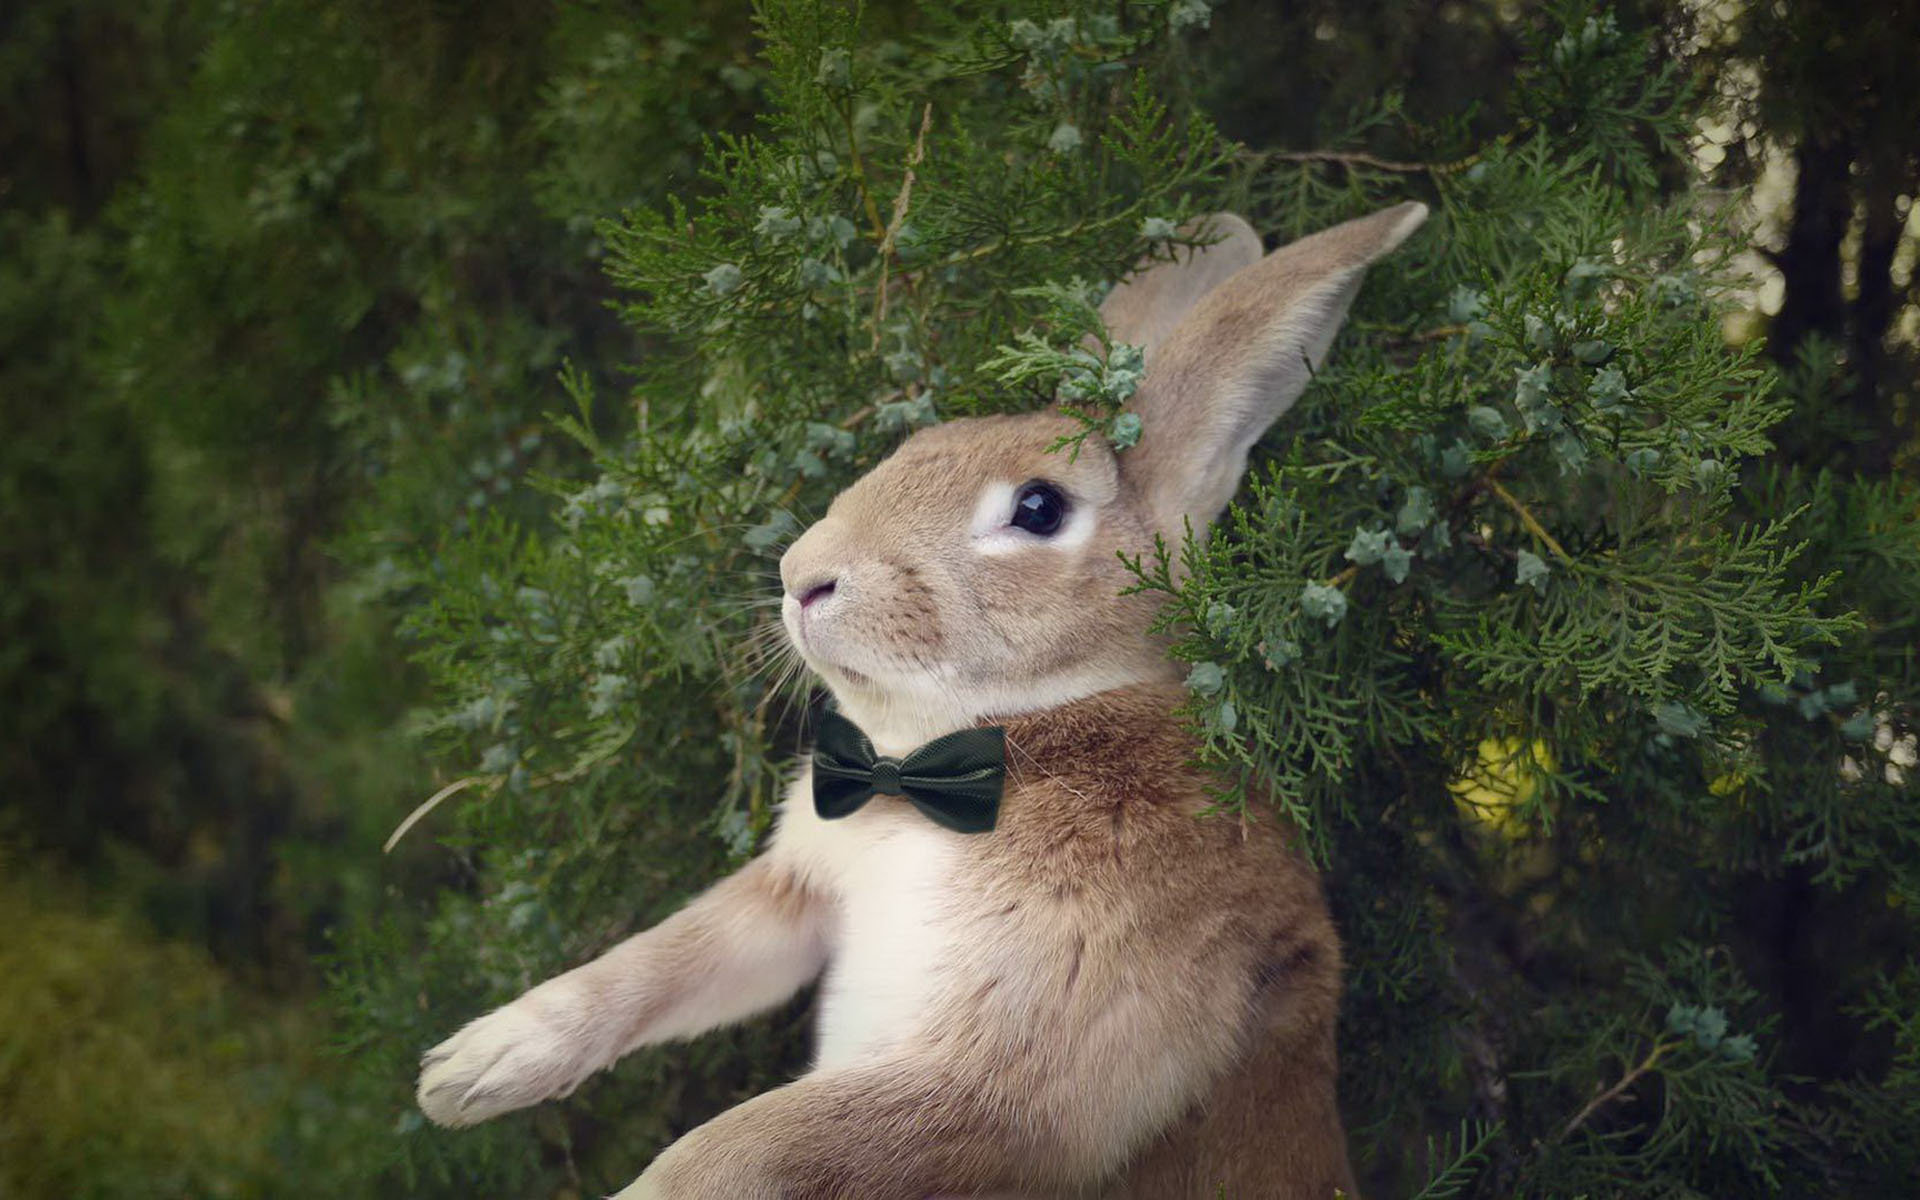 史大力 微博红兔高清动物桌面壁纸 第二集